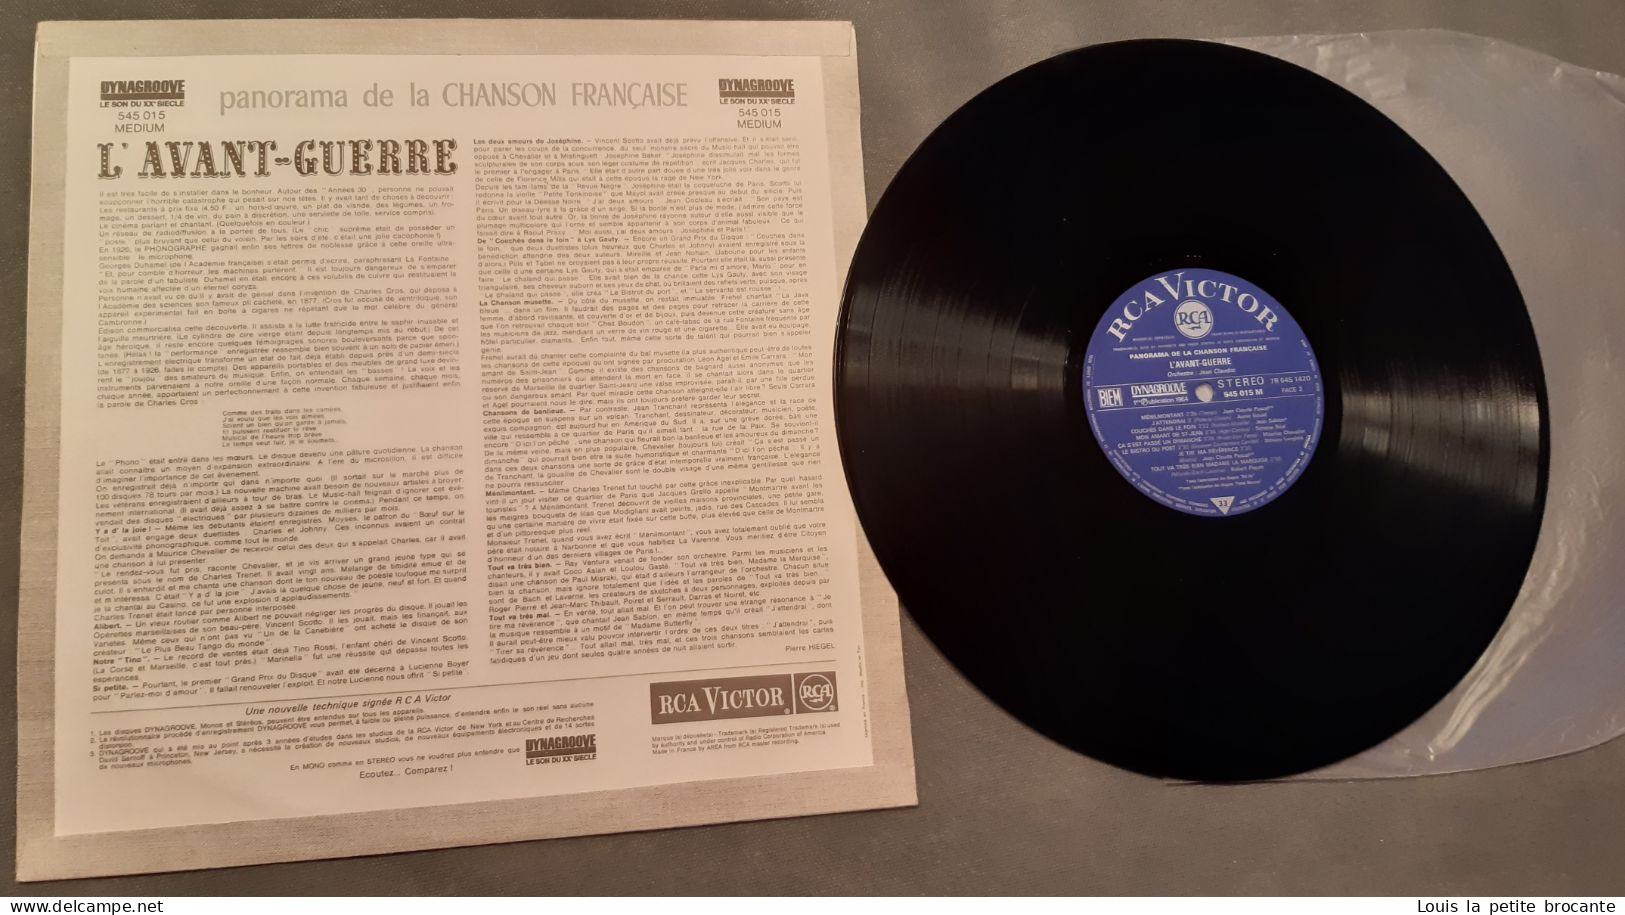 Coffret de 10 disques vinyles, PANORAMA DE LA CHANSON FRANCAISE - DINAGROOVE - RCA VICTOR 1964, 1 chanson rayée